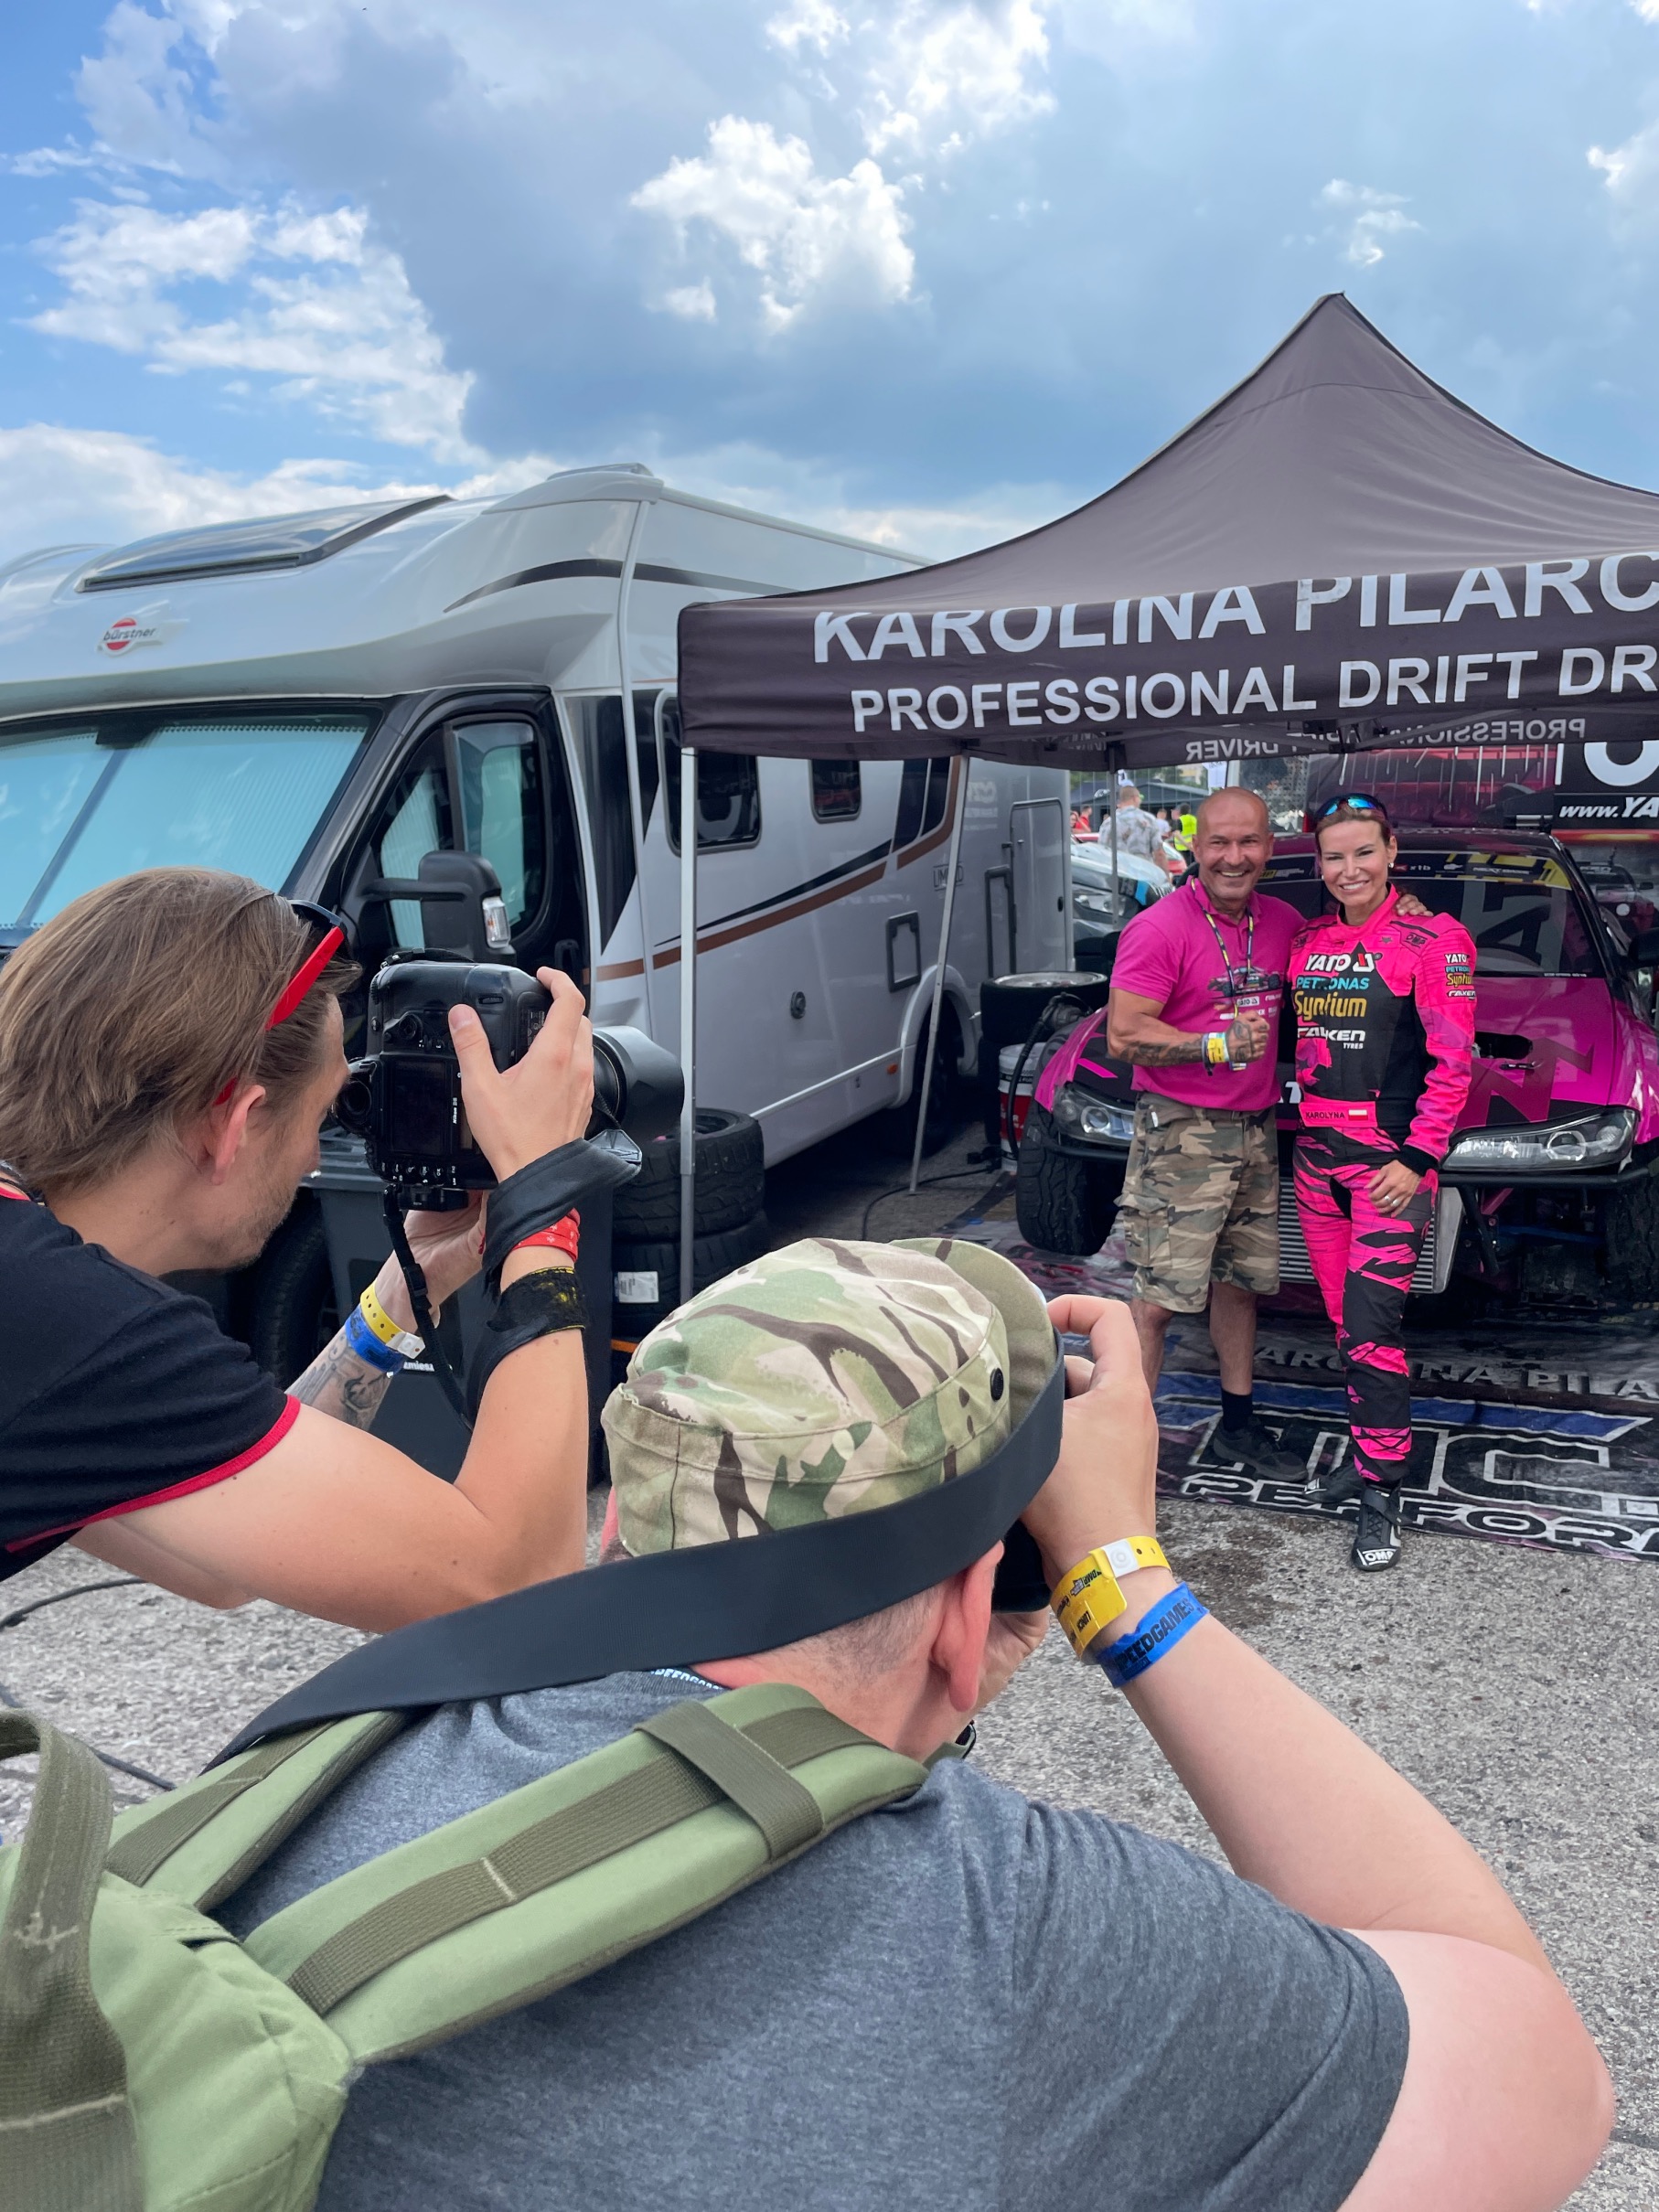 Renata: Karolina „niezłomna” Pilarczyk, bo drifting to … sport drużynowy - BlogStar.pl